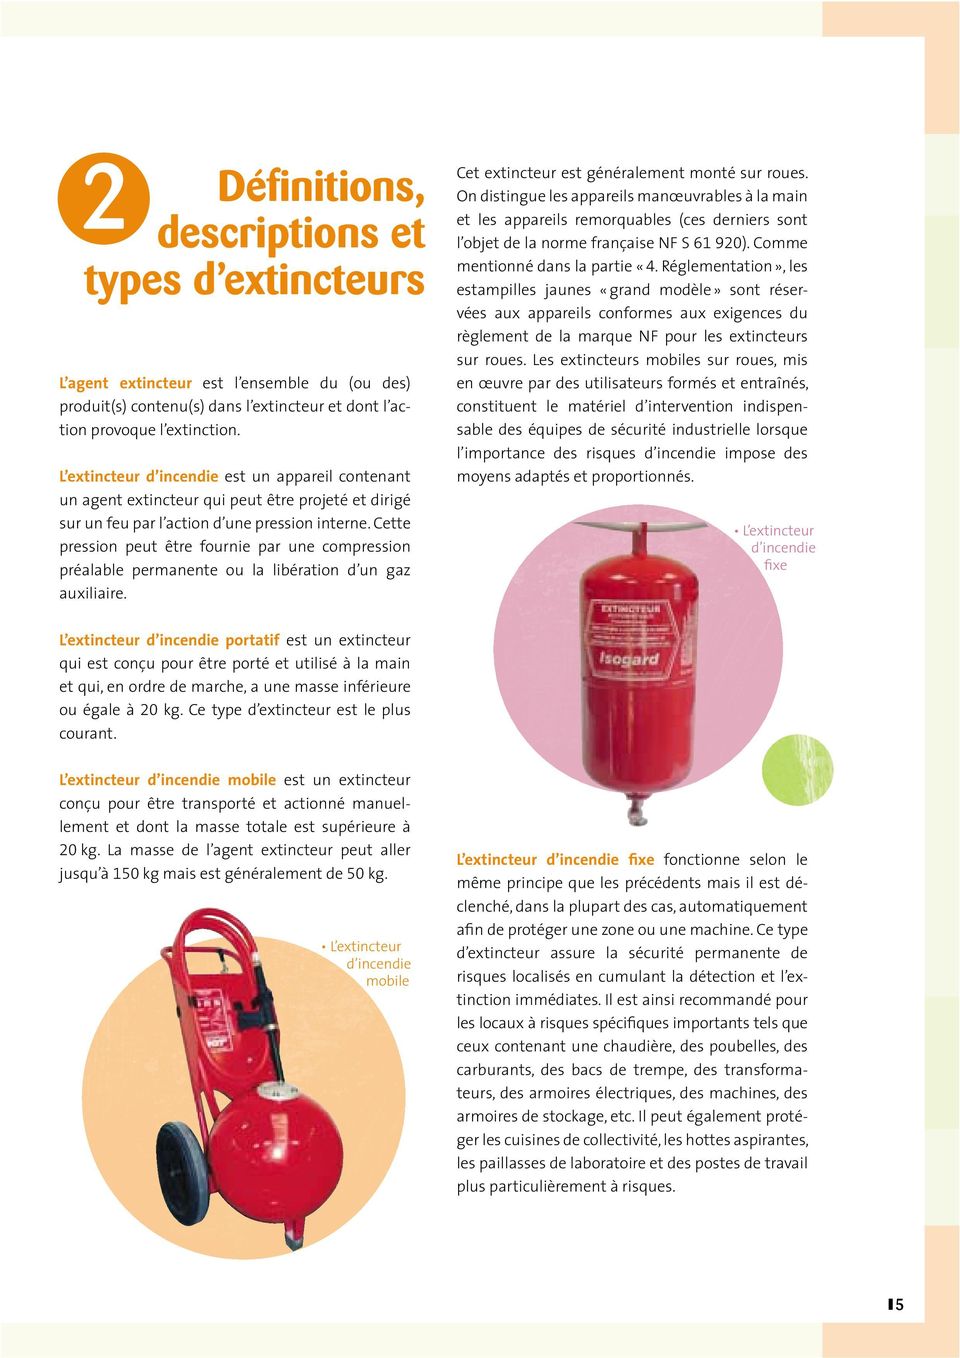 Les extincteurs d'incendie portatifs, mobiles et fixe - Brochure - INRS